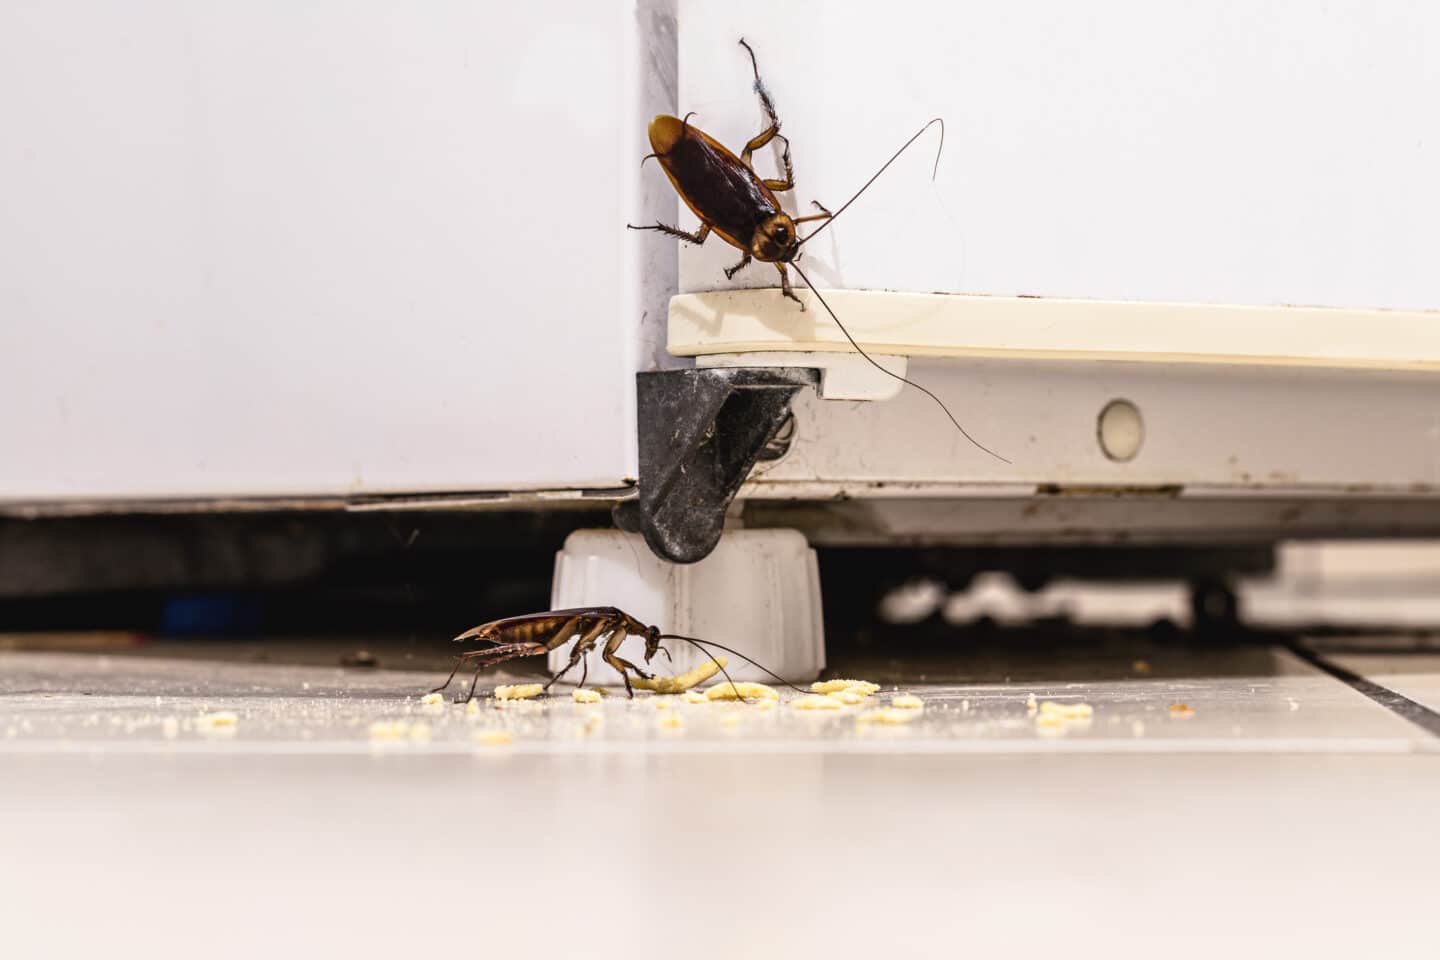 cockroach infestation in kitchen